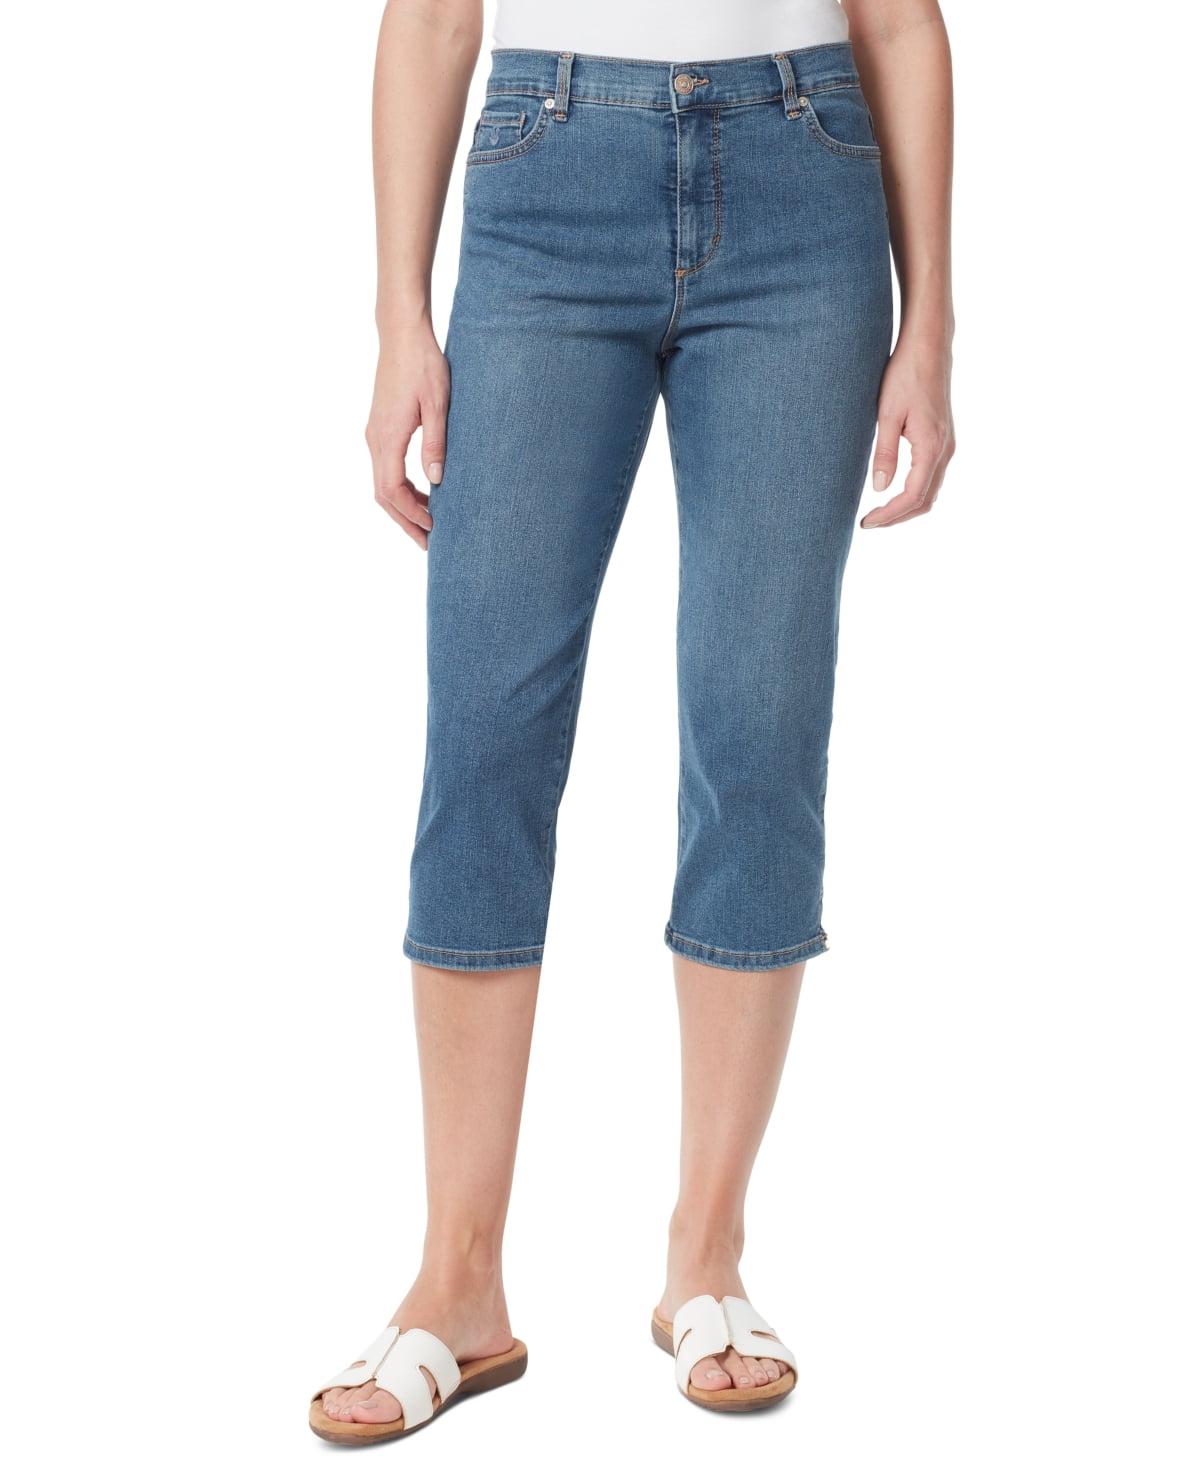 Gloria Vanderbilt Women's Amanda Capri Jeans Blue Size 8 - Walmart.com